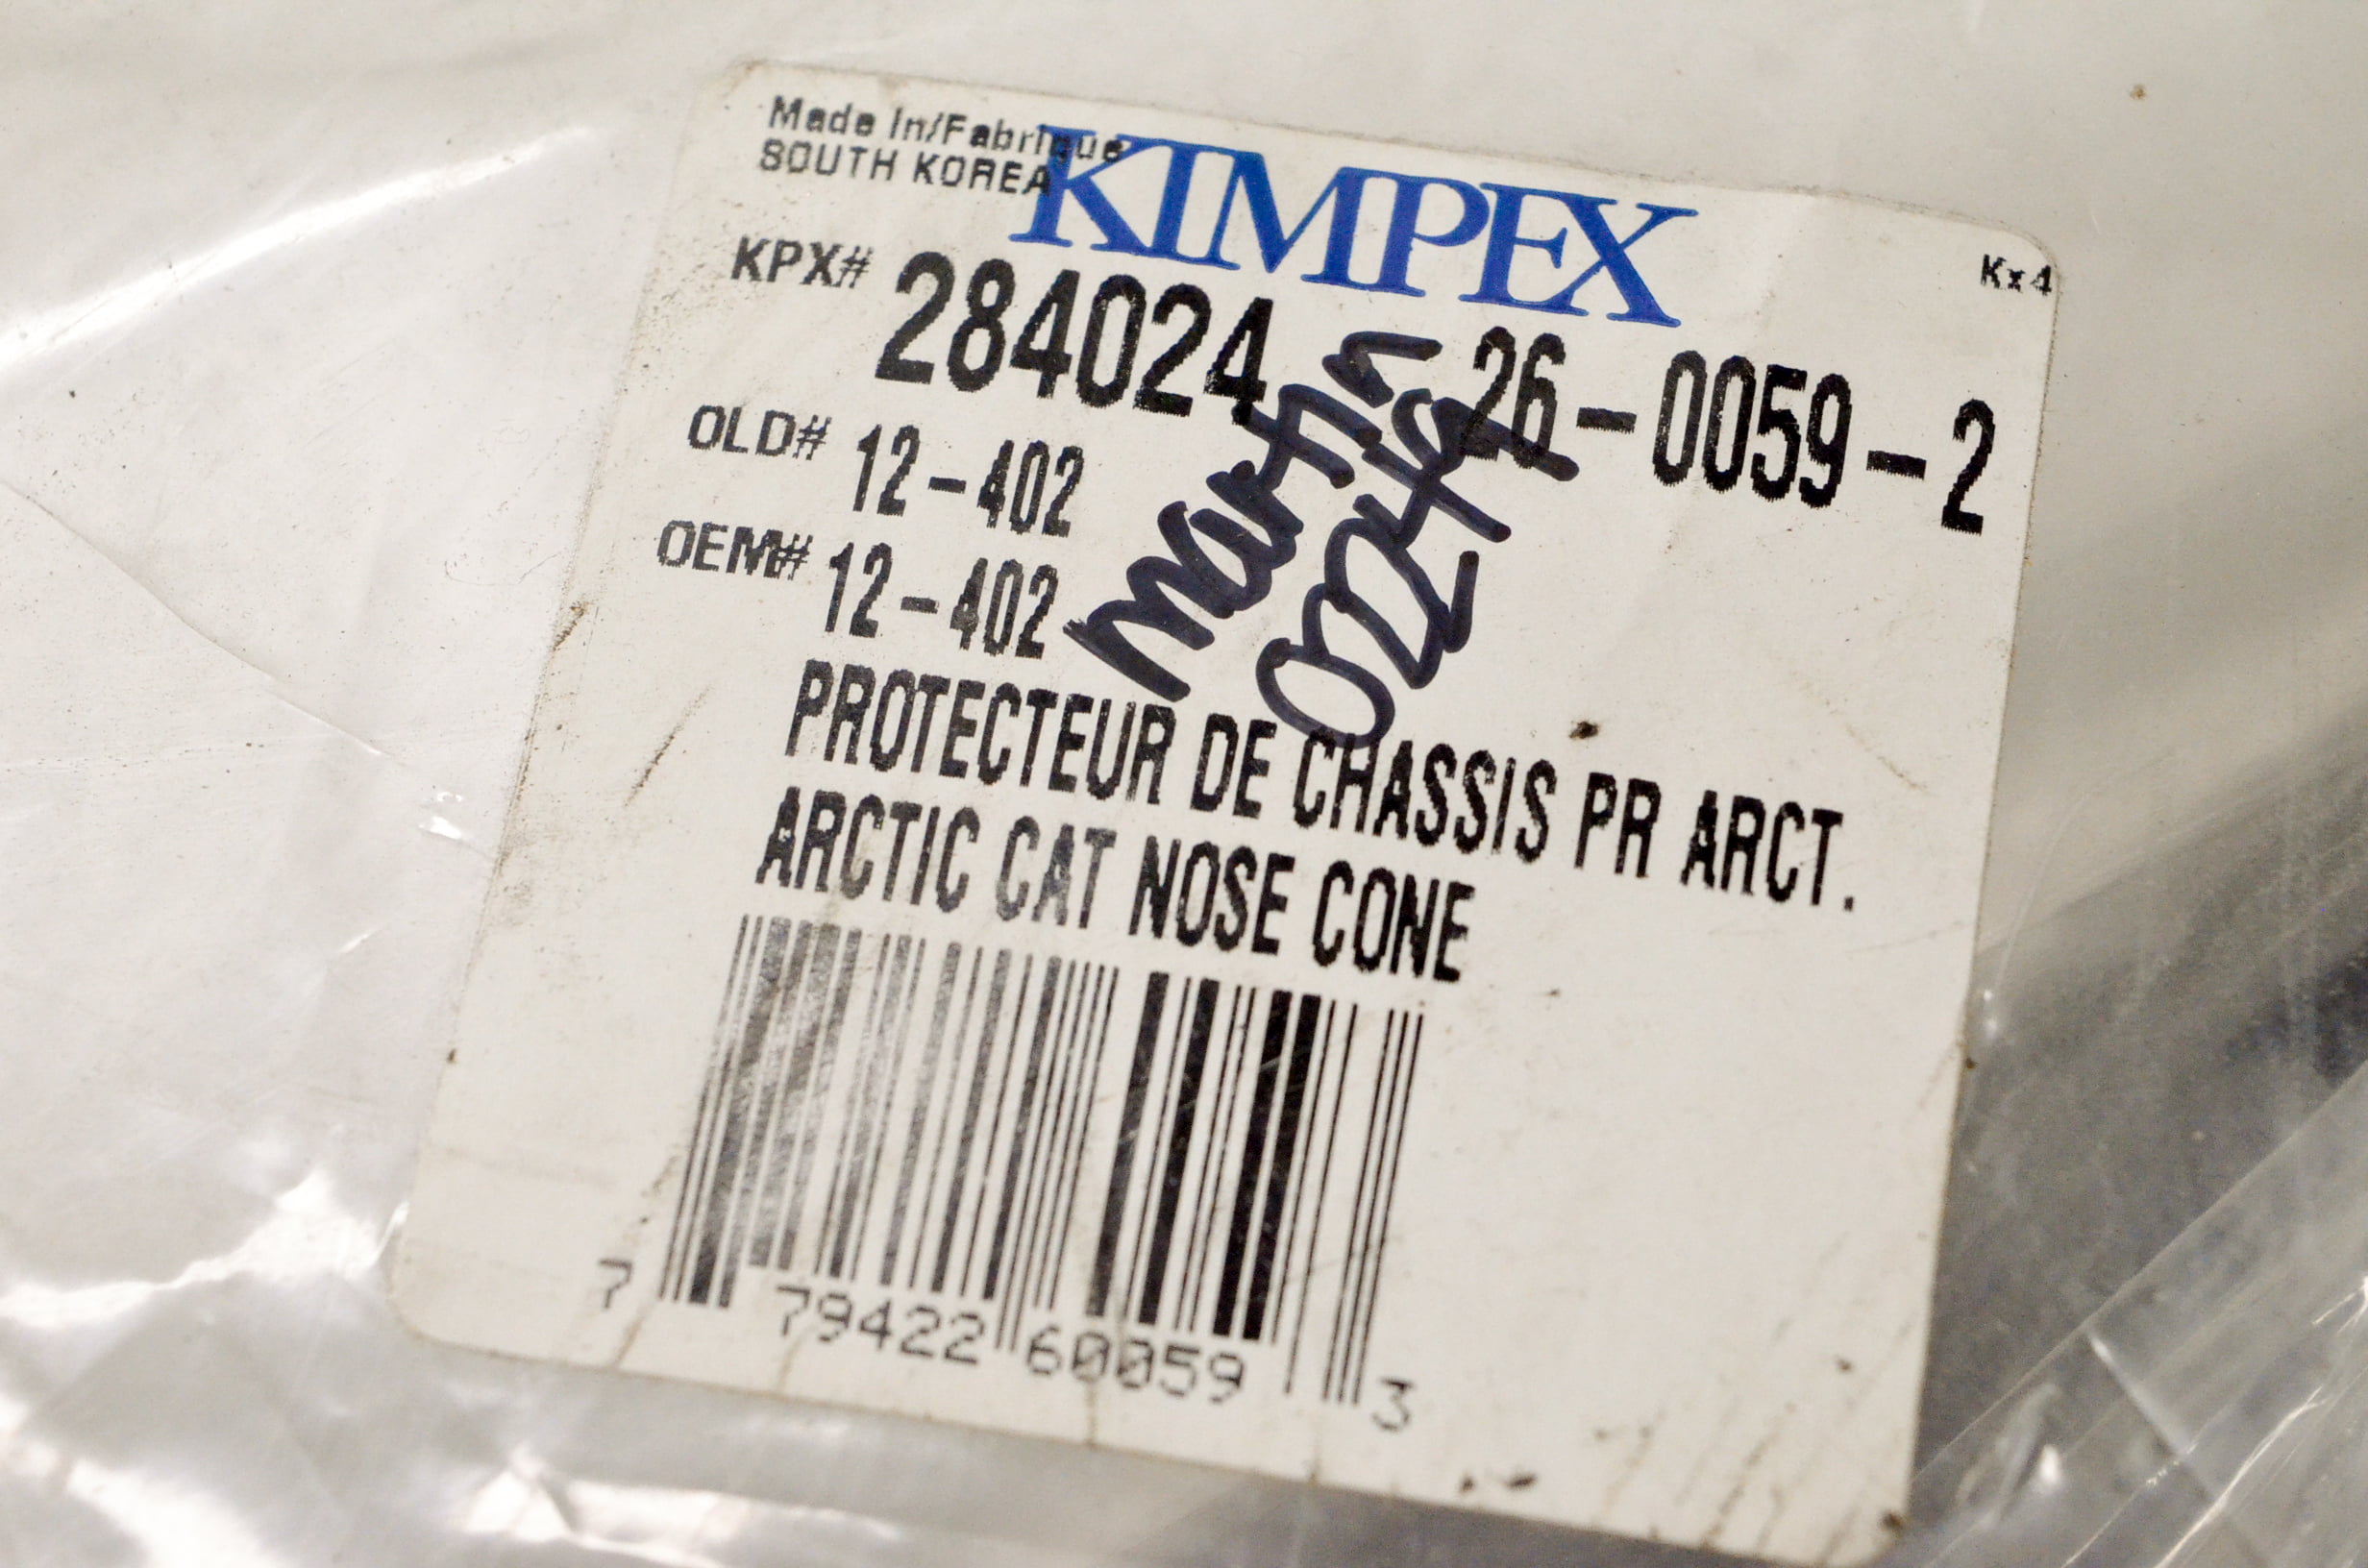 Kimpex 12-402 Nose Cone